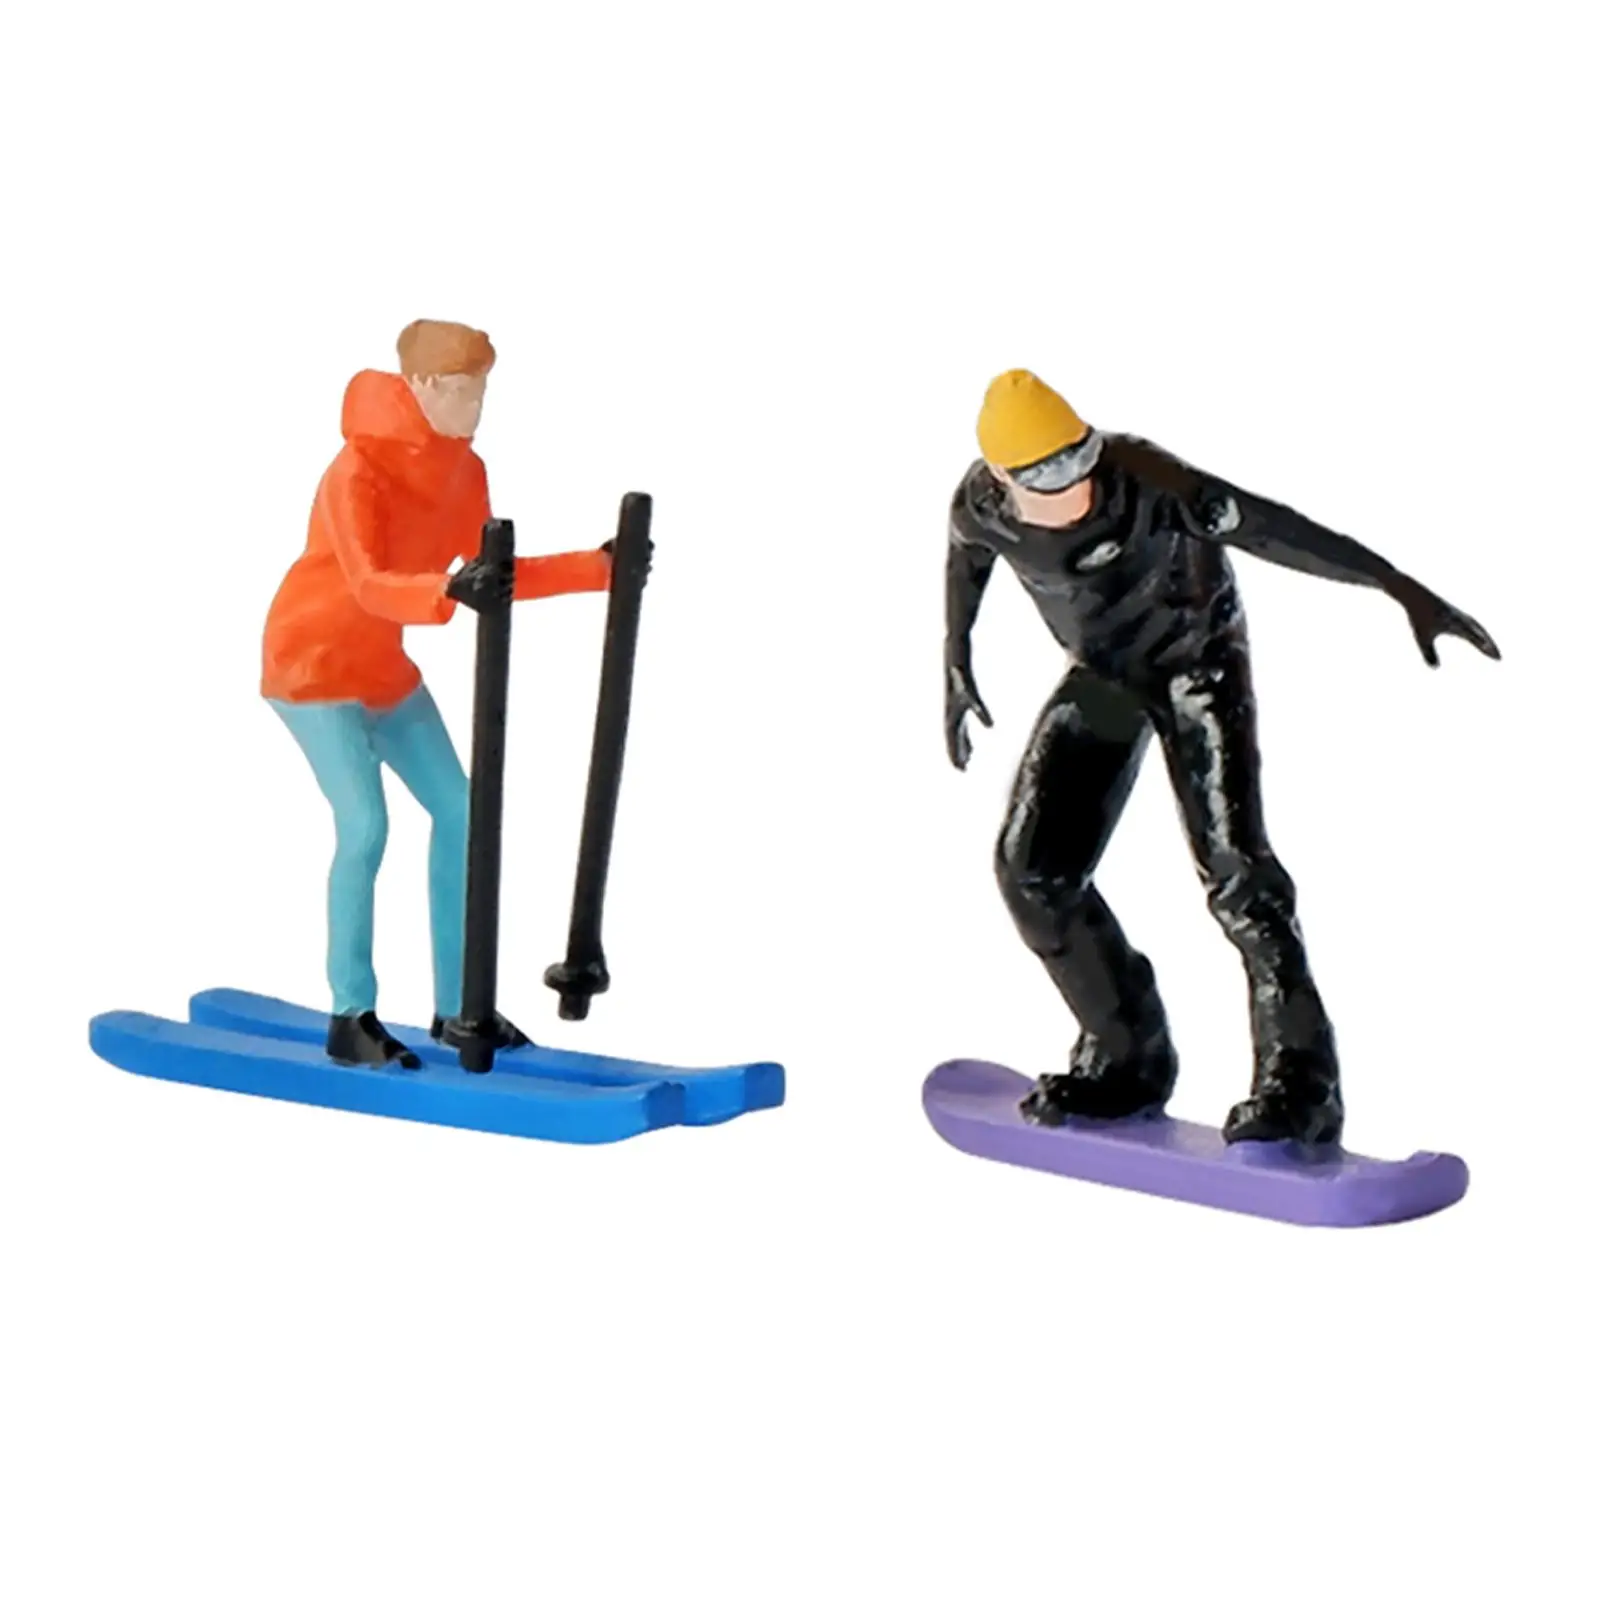 

Модель для катания на лыжах в масштабе 1:64, фигурки для катания на мини-лыжах, модель для песочного стола «сделай сам», украшение для расстановки сцены